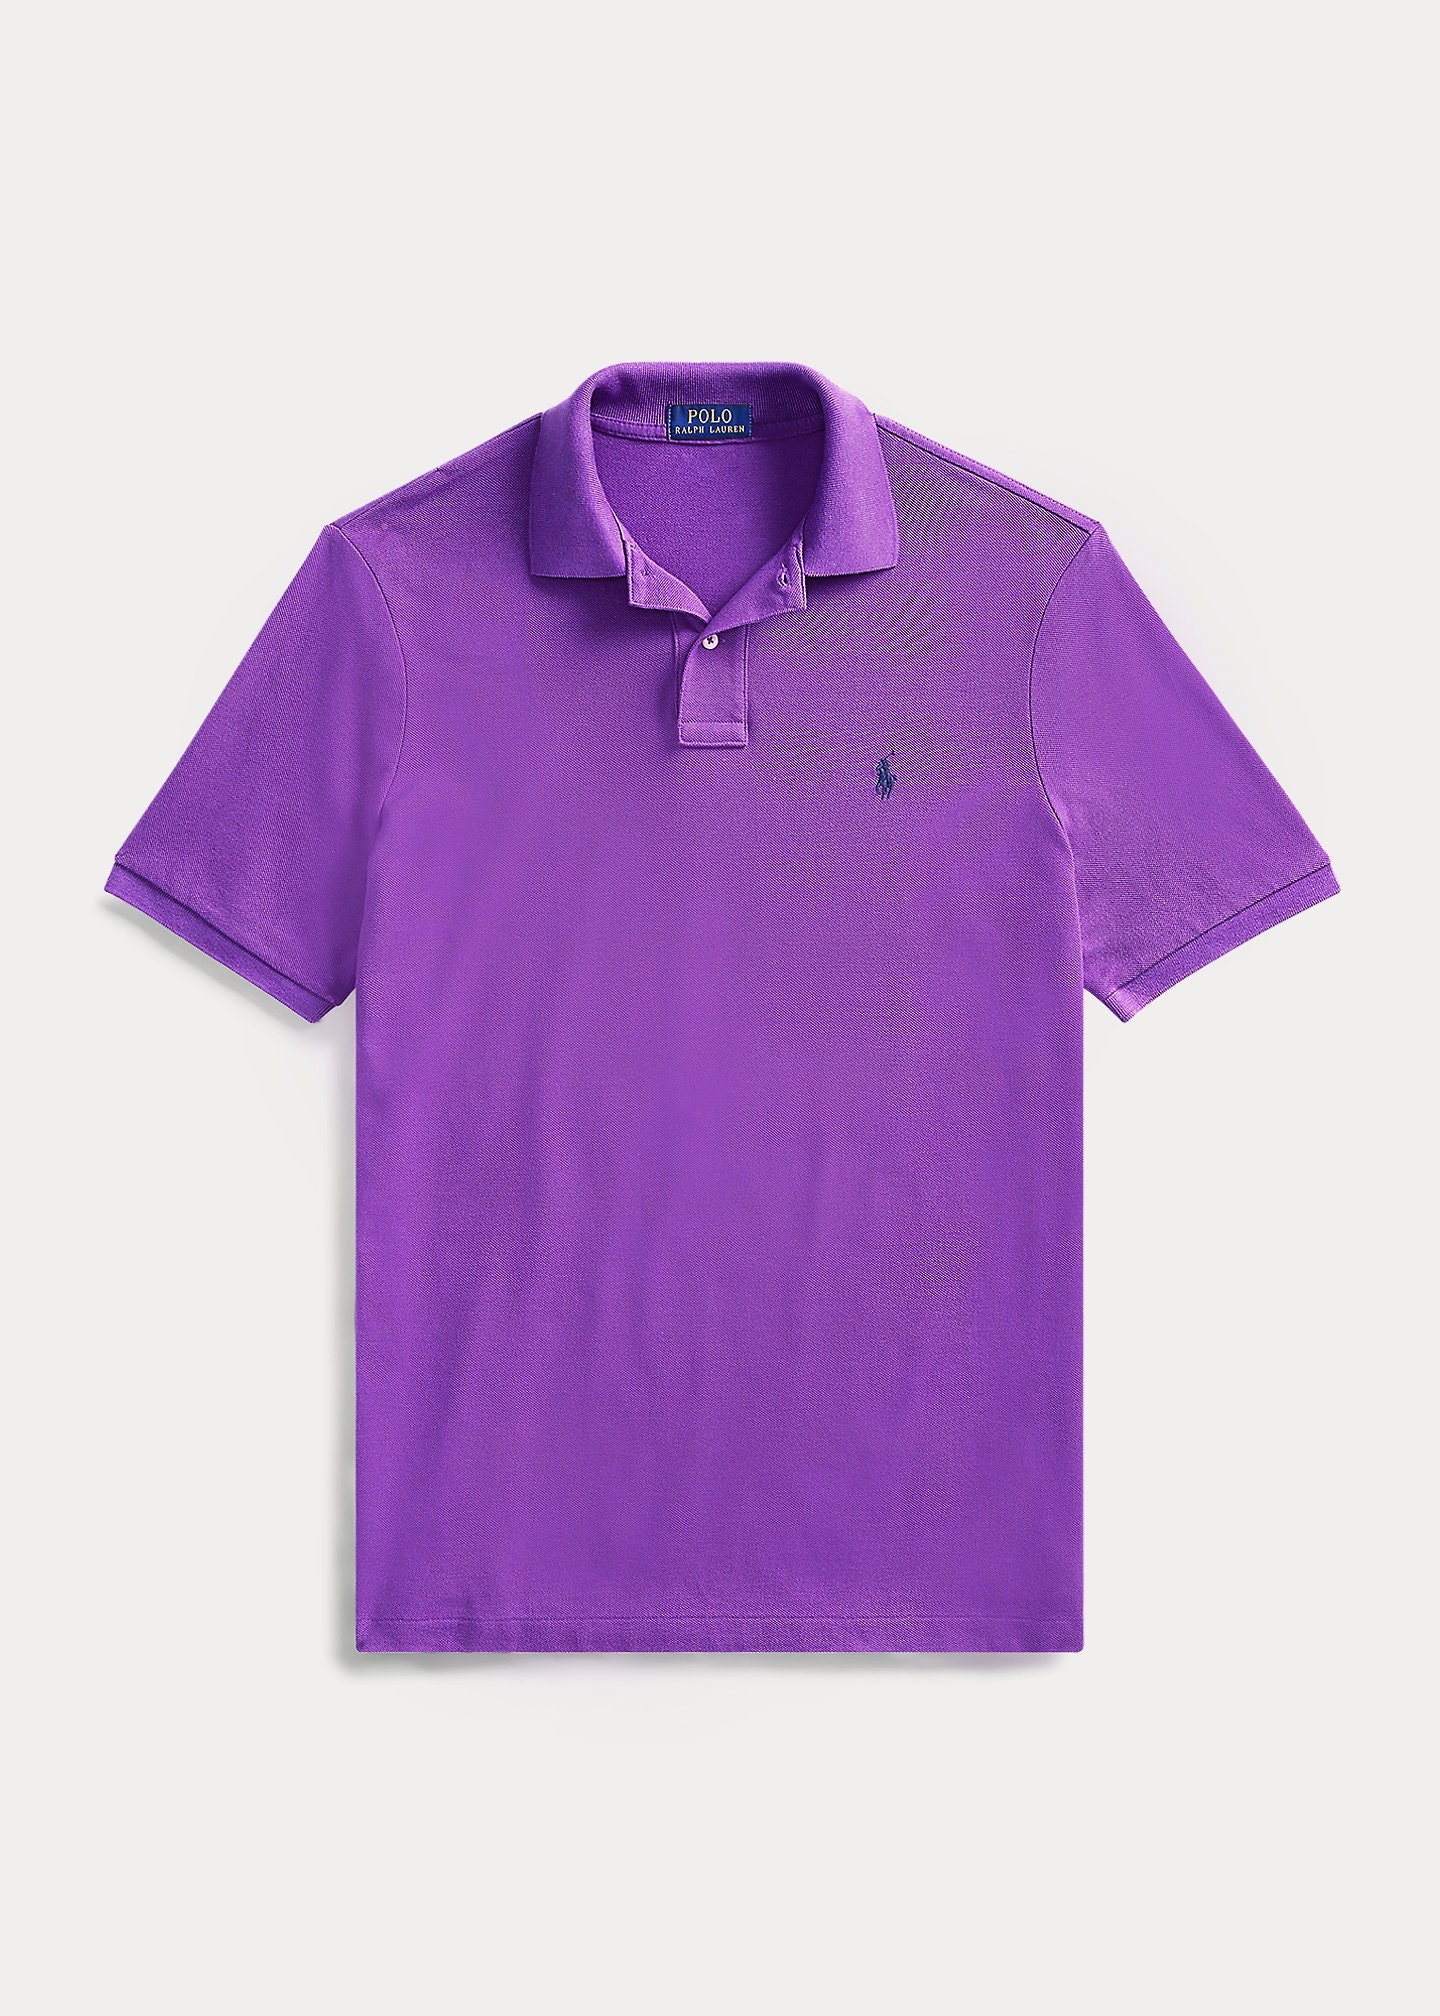 Ralph Lauren Mens Polo Shirt Short Sleeve Brand New - Etsy UK